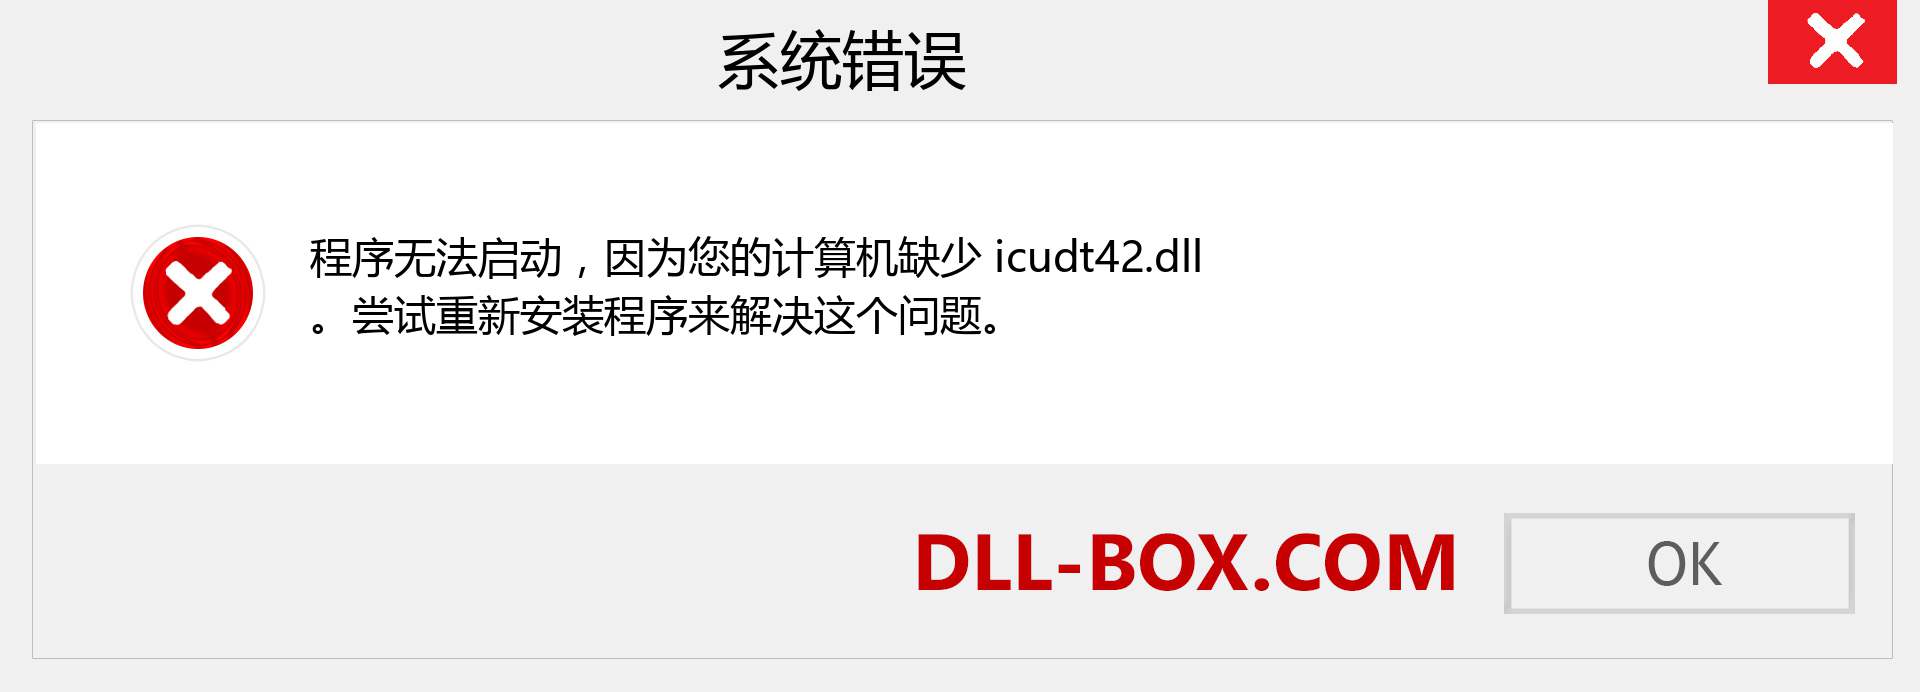 icudt42.dll 文件丢失？。 适用于 Windows 7、8、10 的下载 - 修复 Windows、照片、图像上的 icudt42 dll 丢失错误